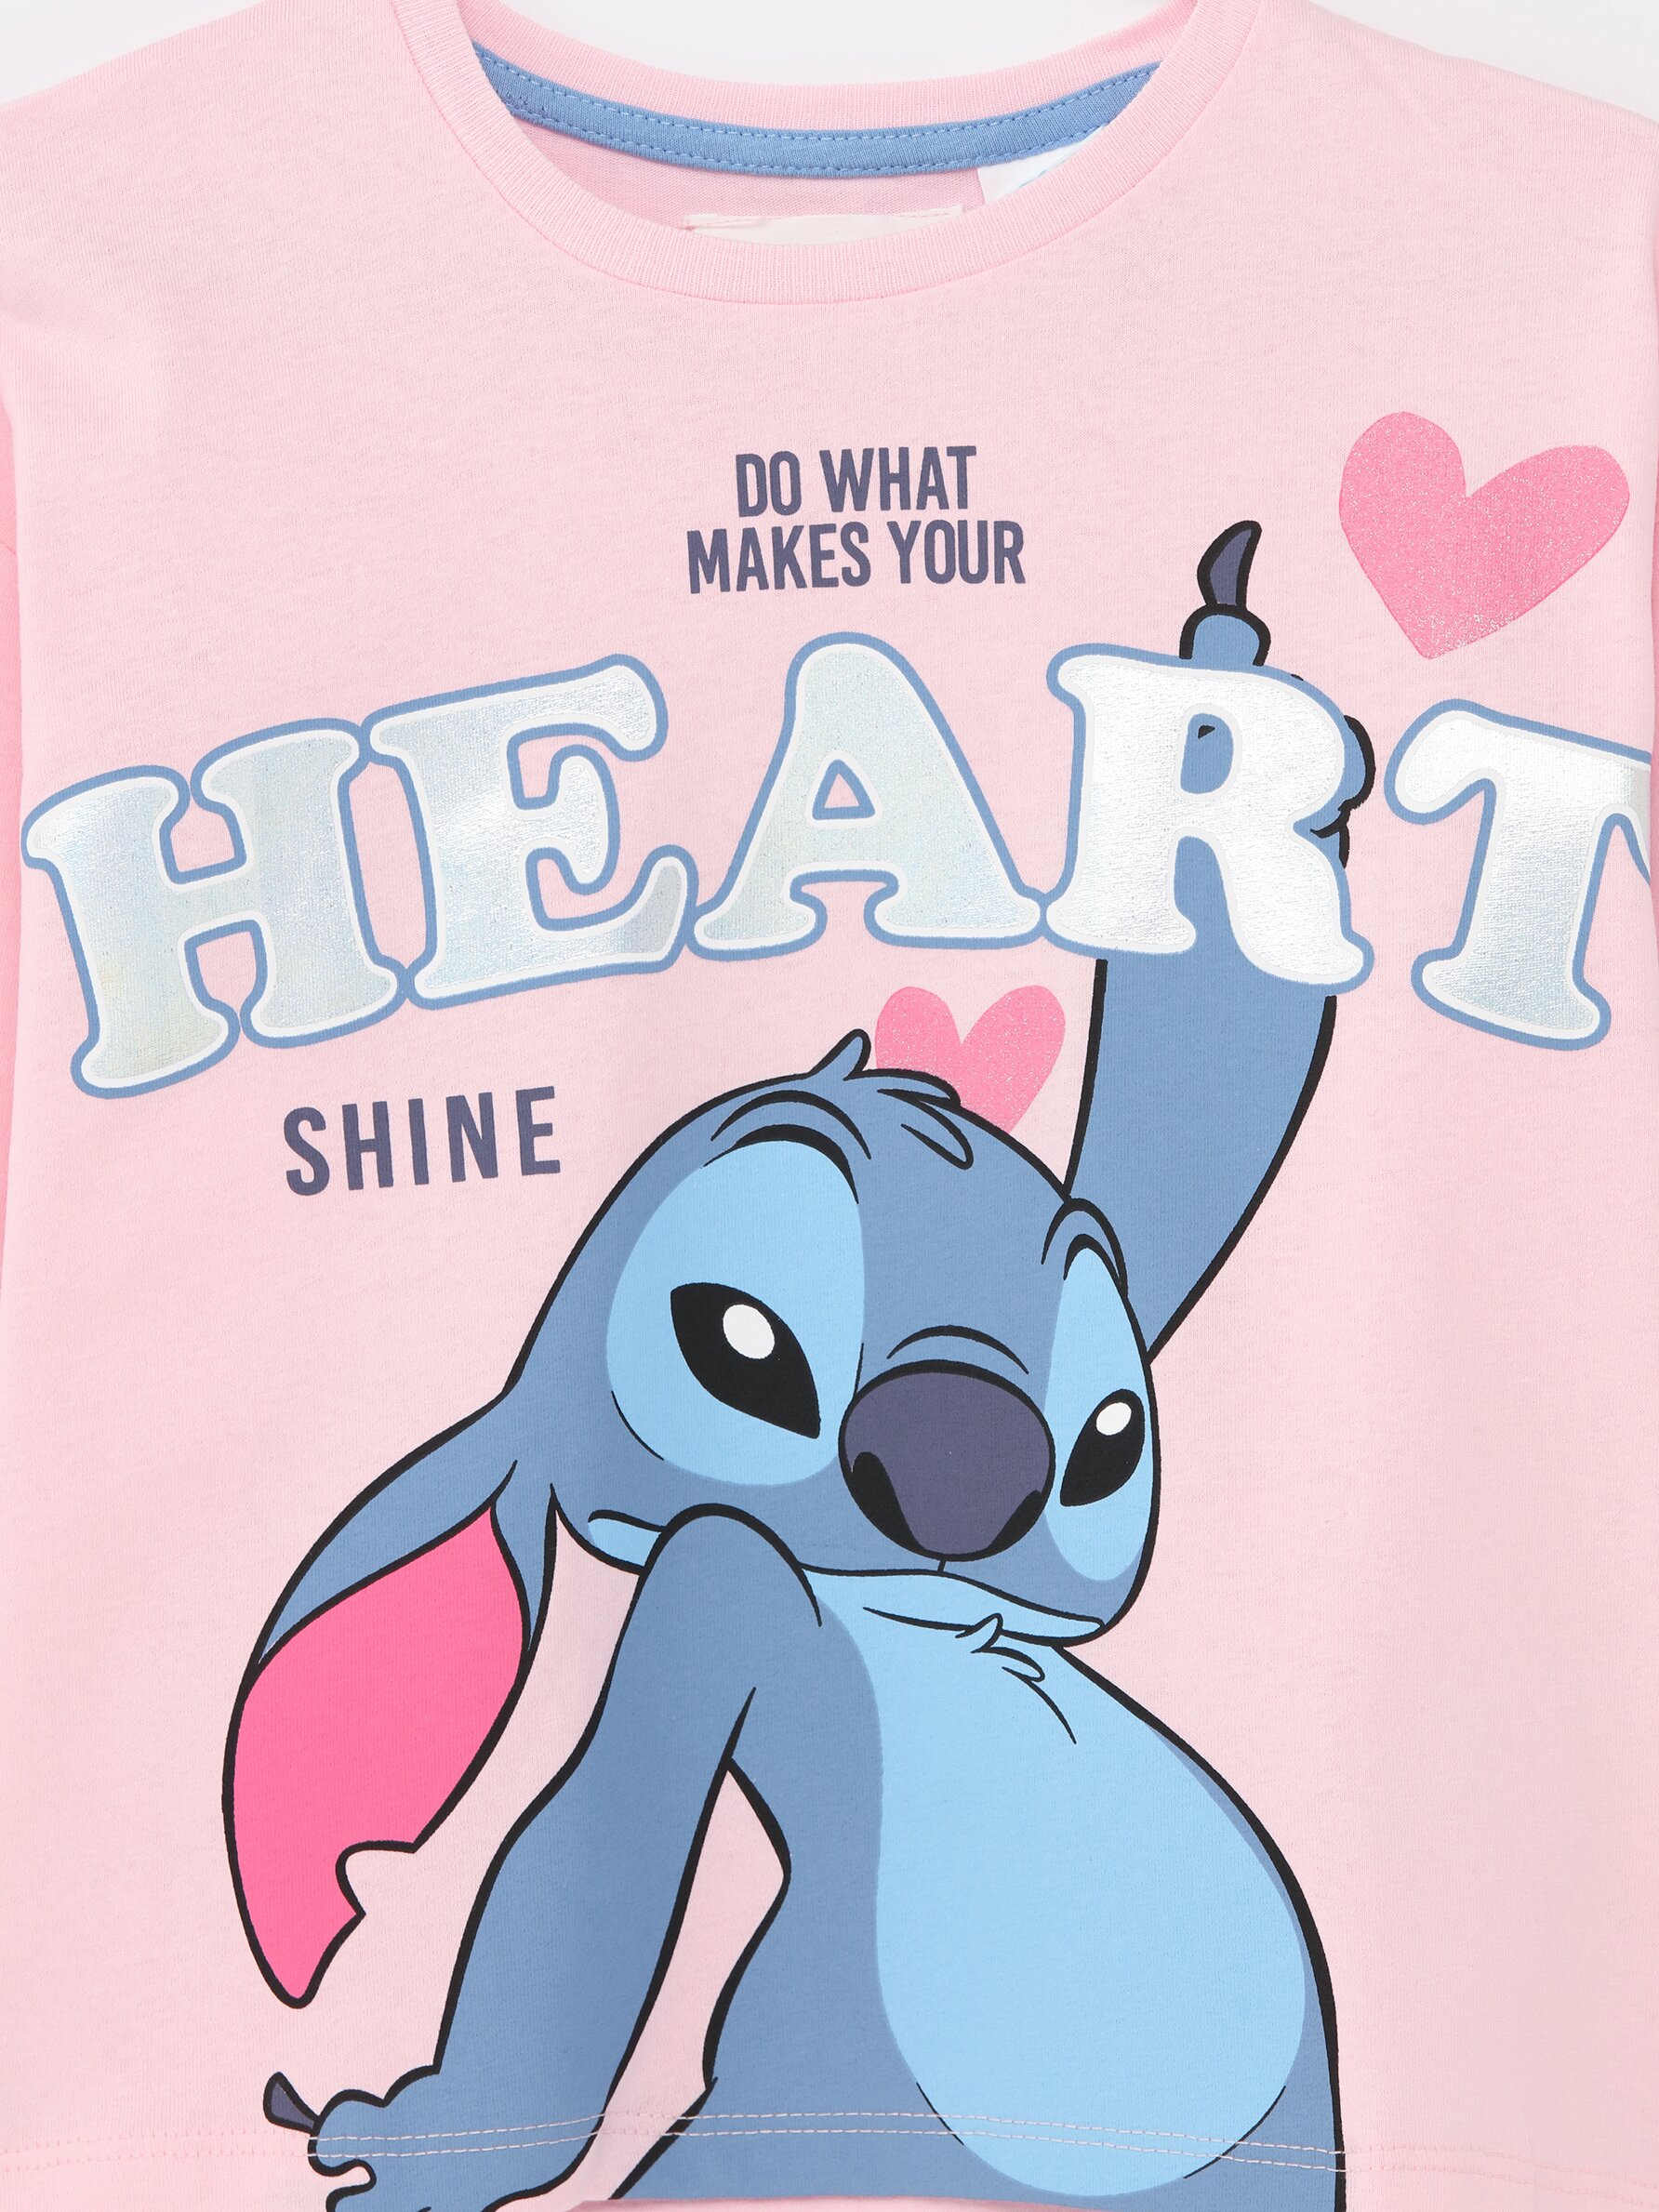 Disney Camiseta Lilo y Stitch para Niña de Punto de Manga Larga de